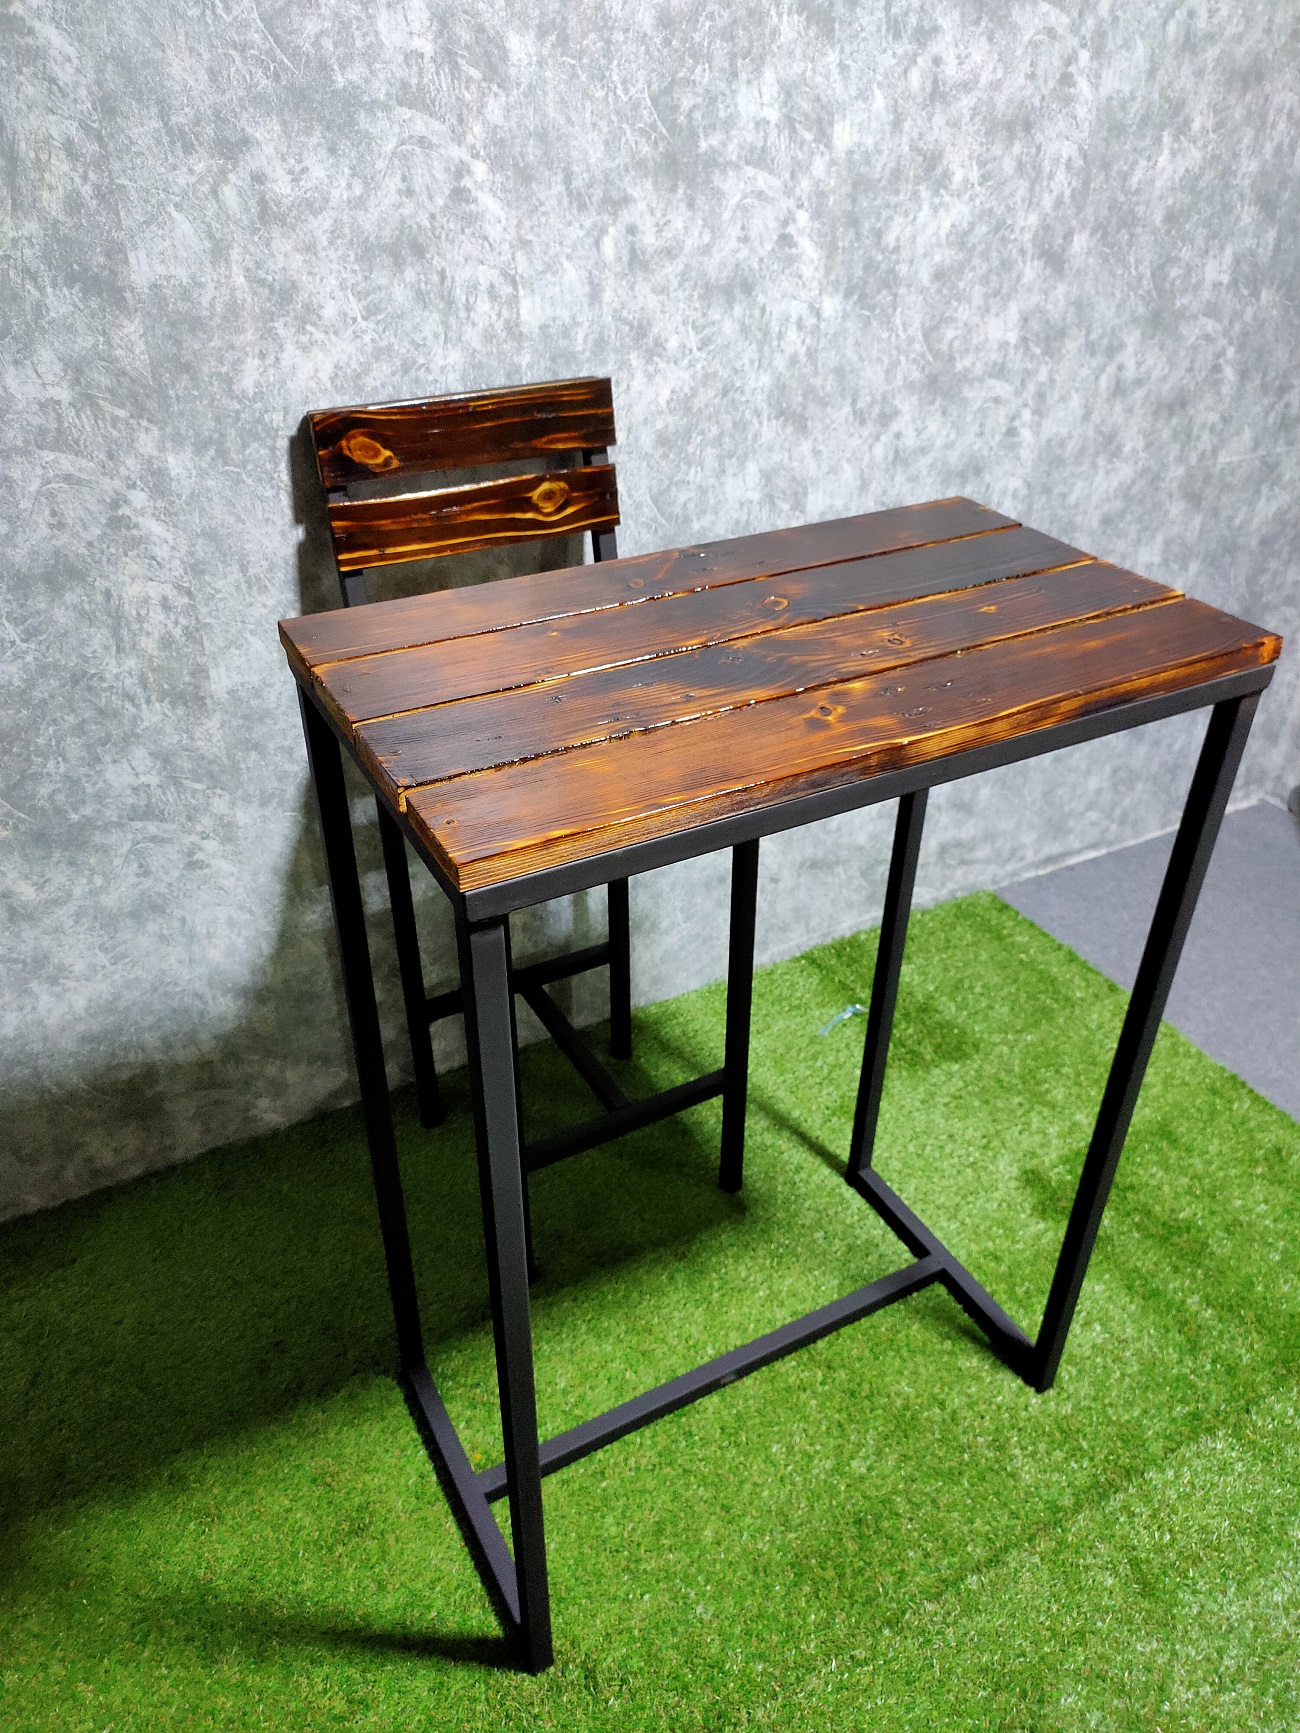 โต๊ะบาร์ โต๊ะกาแฟ เฉพาะ โต๊ะ สุดหรู loft style ทรงสูง [ไม่รวมเก้าอี้]